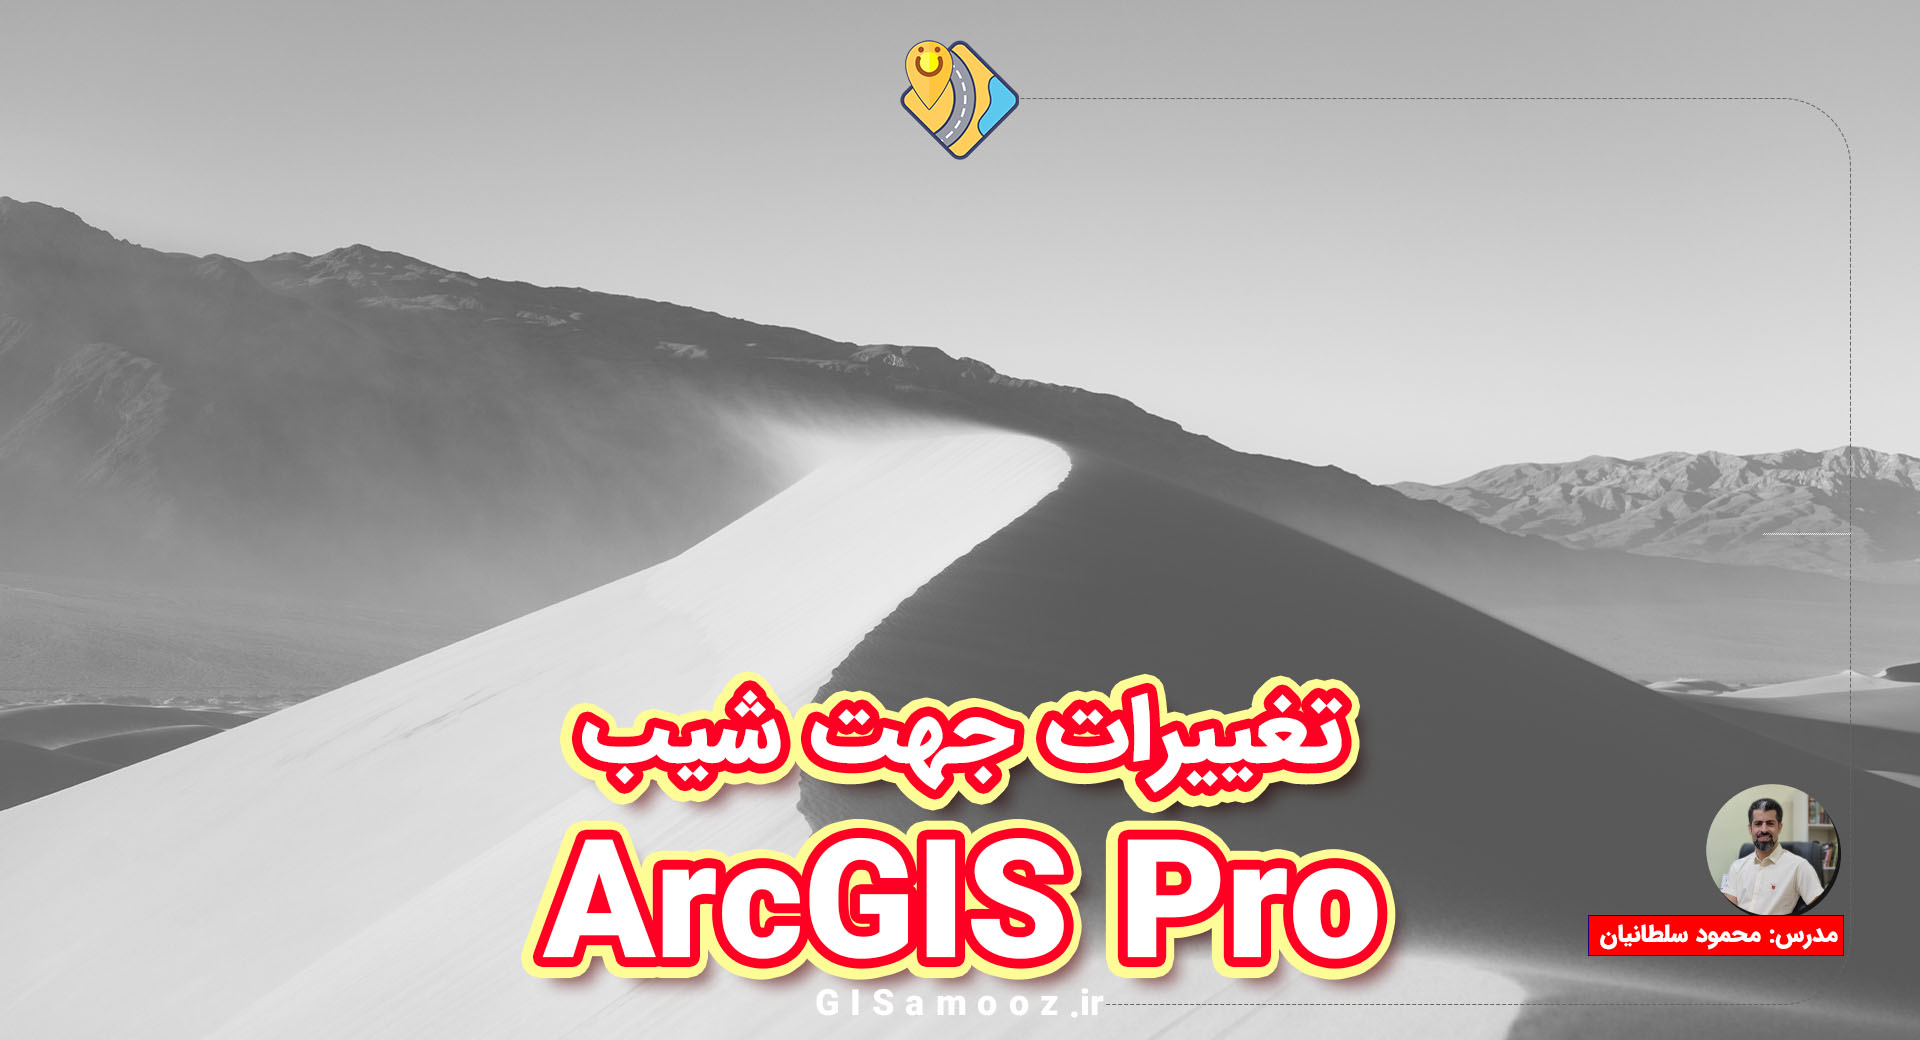 بررسی تغییرات جهت شیب تهران در ArcGIS Pro